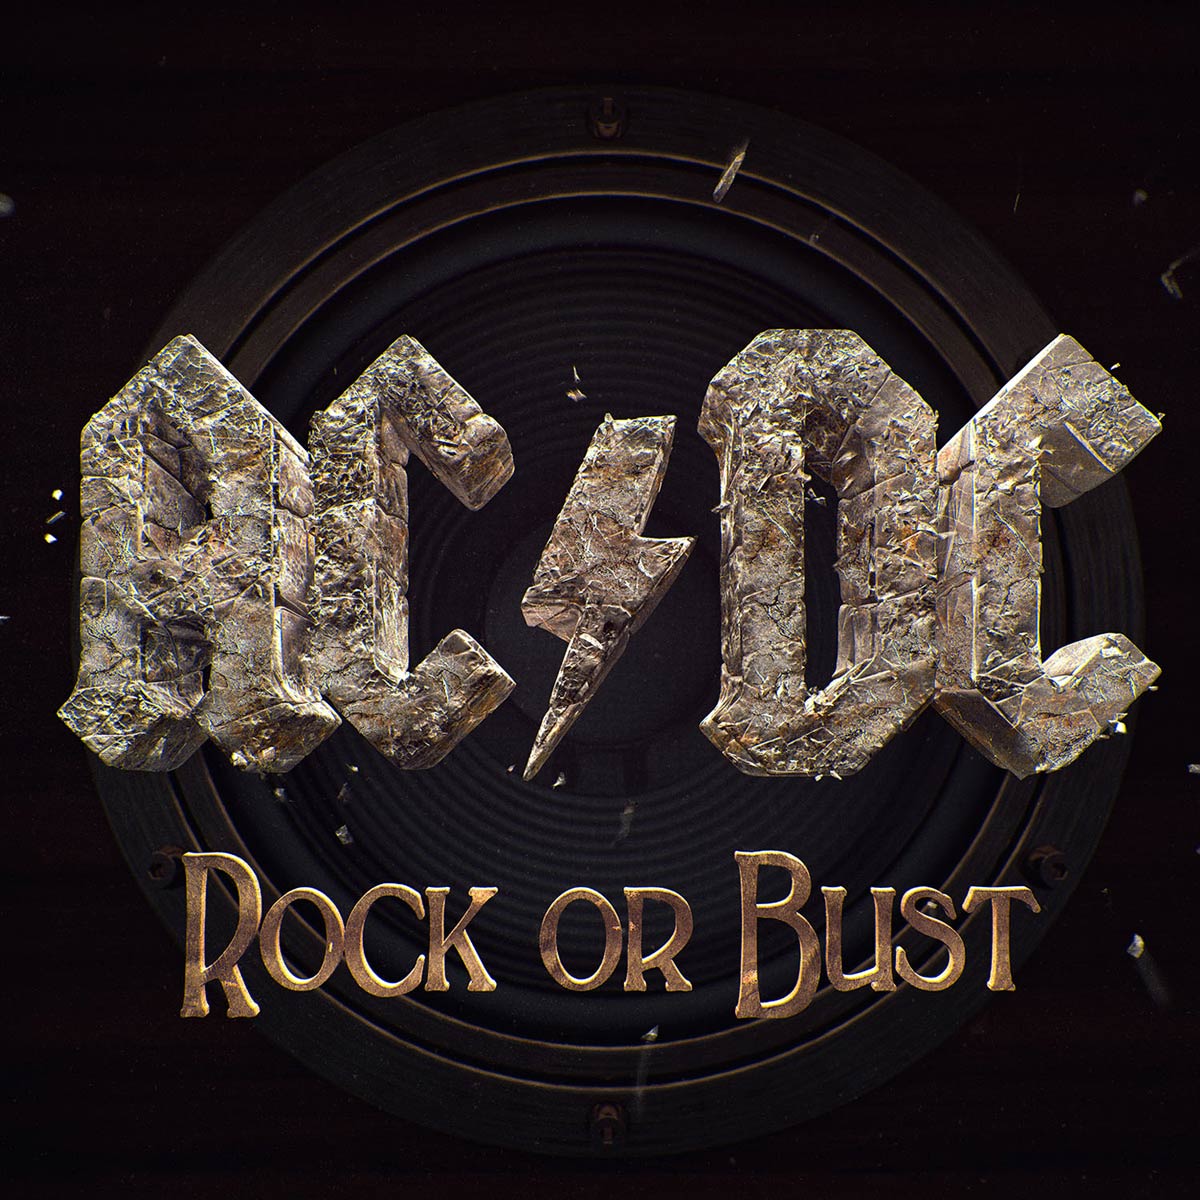 AC/DC: Rock or bust, la portada del disco